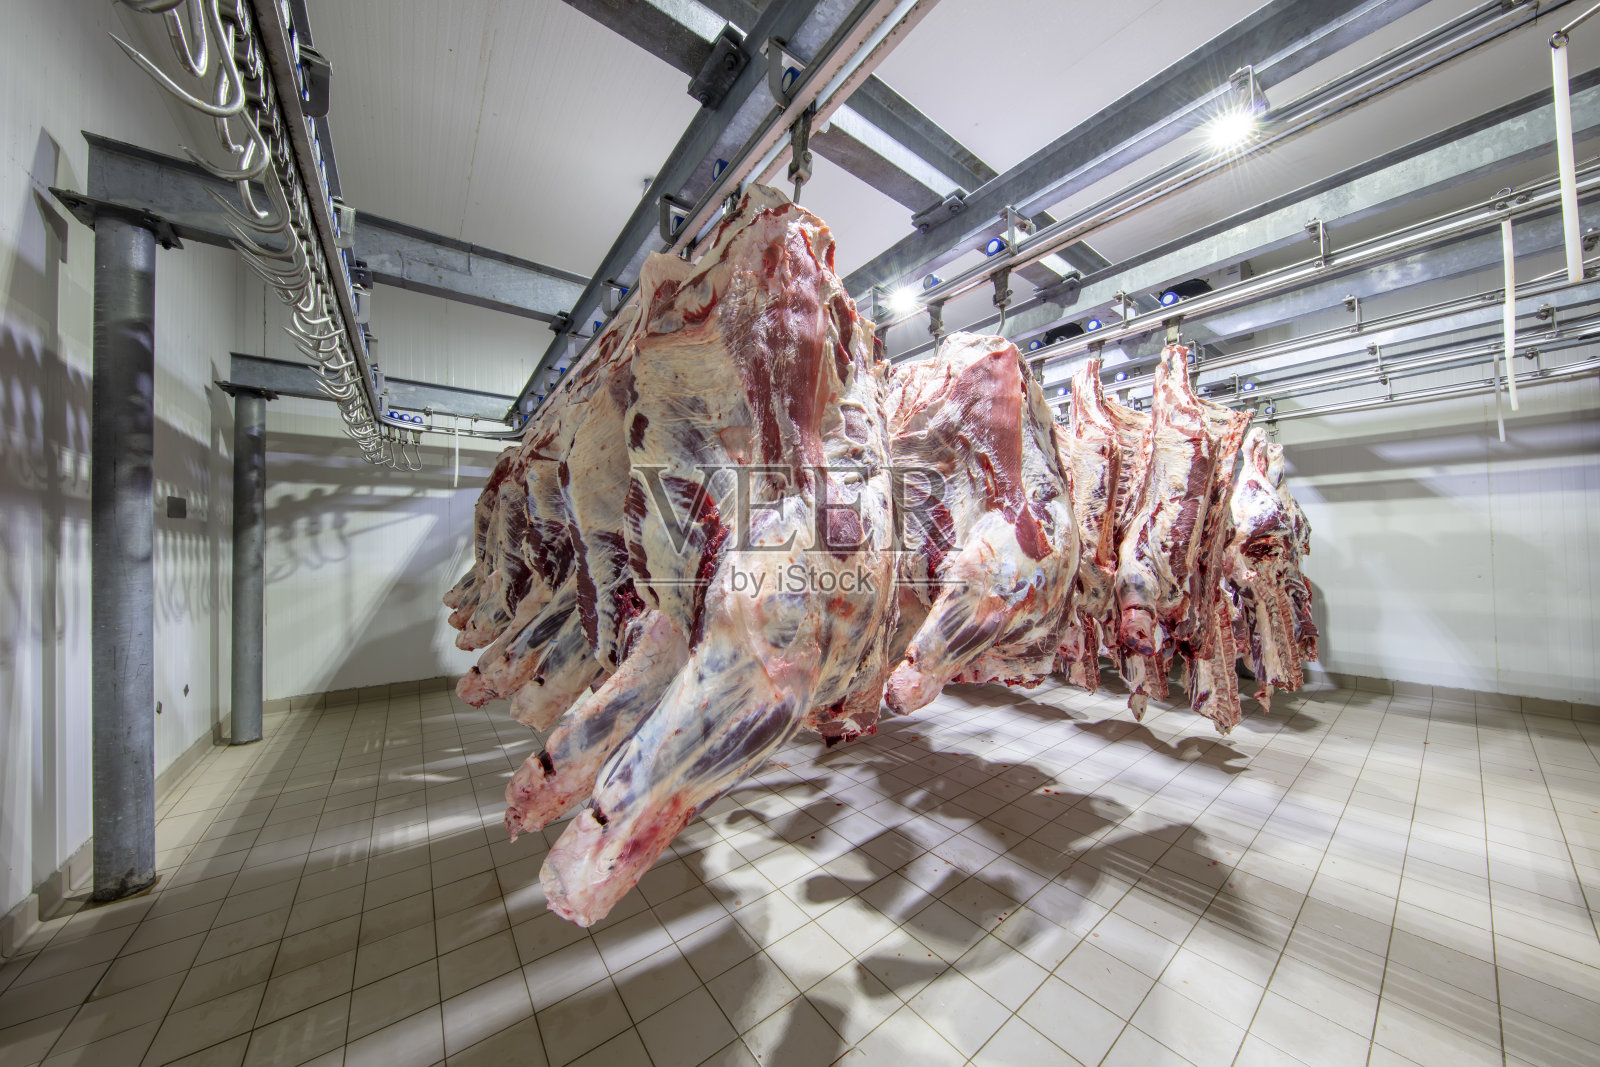 牛屠宰生产线 牛羊分割流水线-食品机械设备网